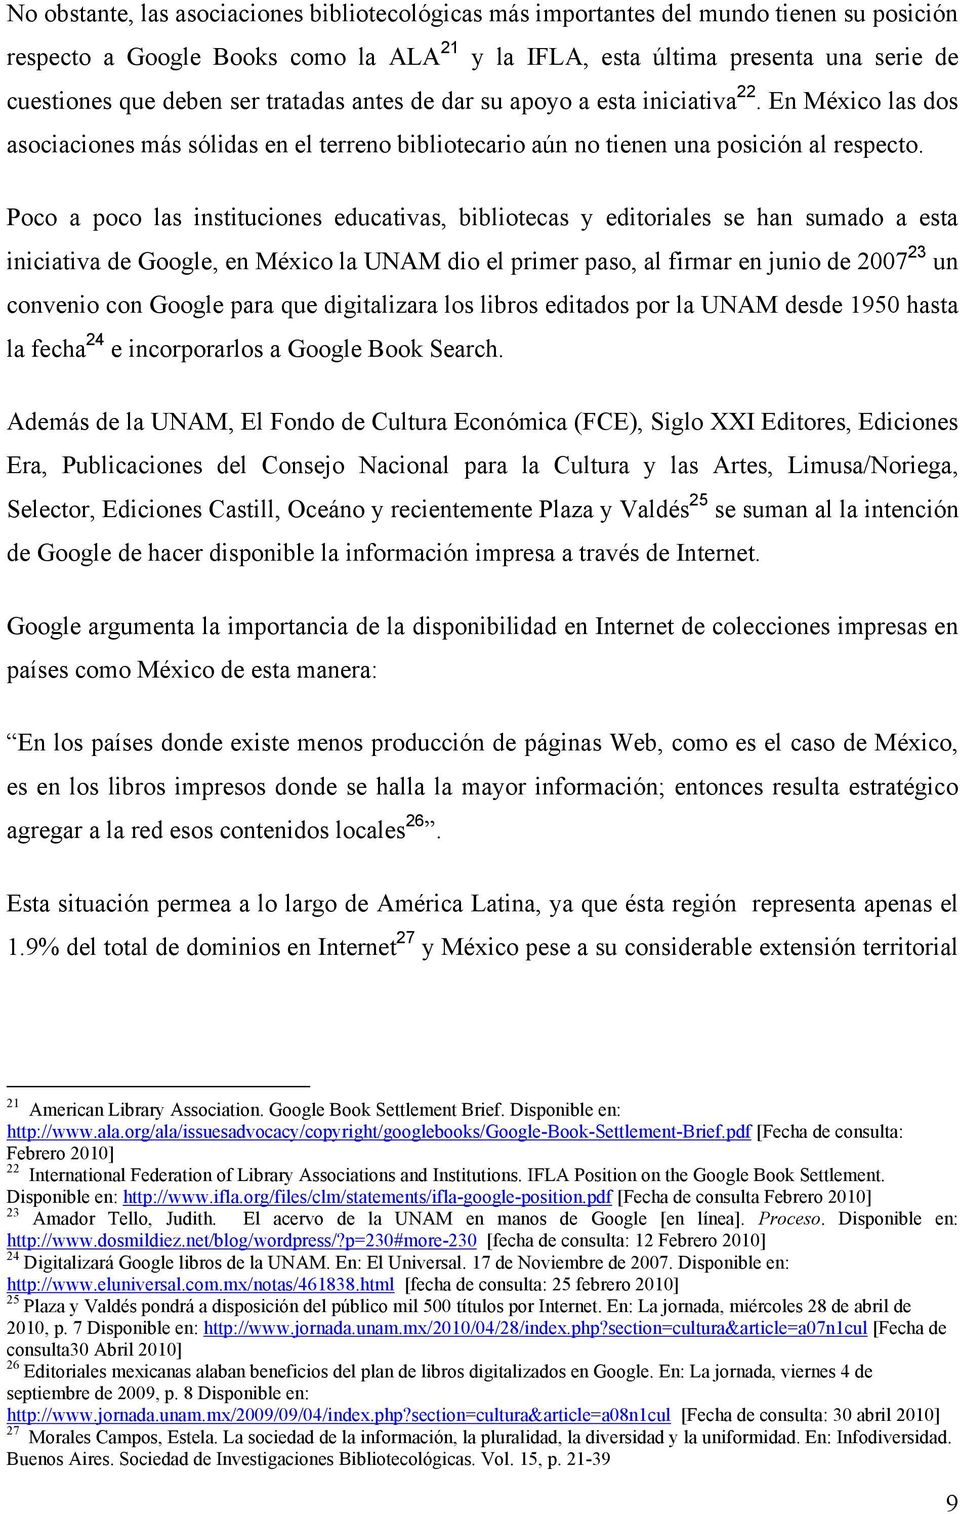 Poco a poco las instituciones educativas, bibliotecas y editoriales se han sumado a esta iniciativa de Google, en México la UNAM dio el primer paso, al firmar en junio de 2007 23 un convenio con